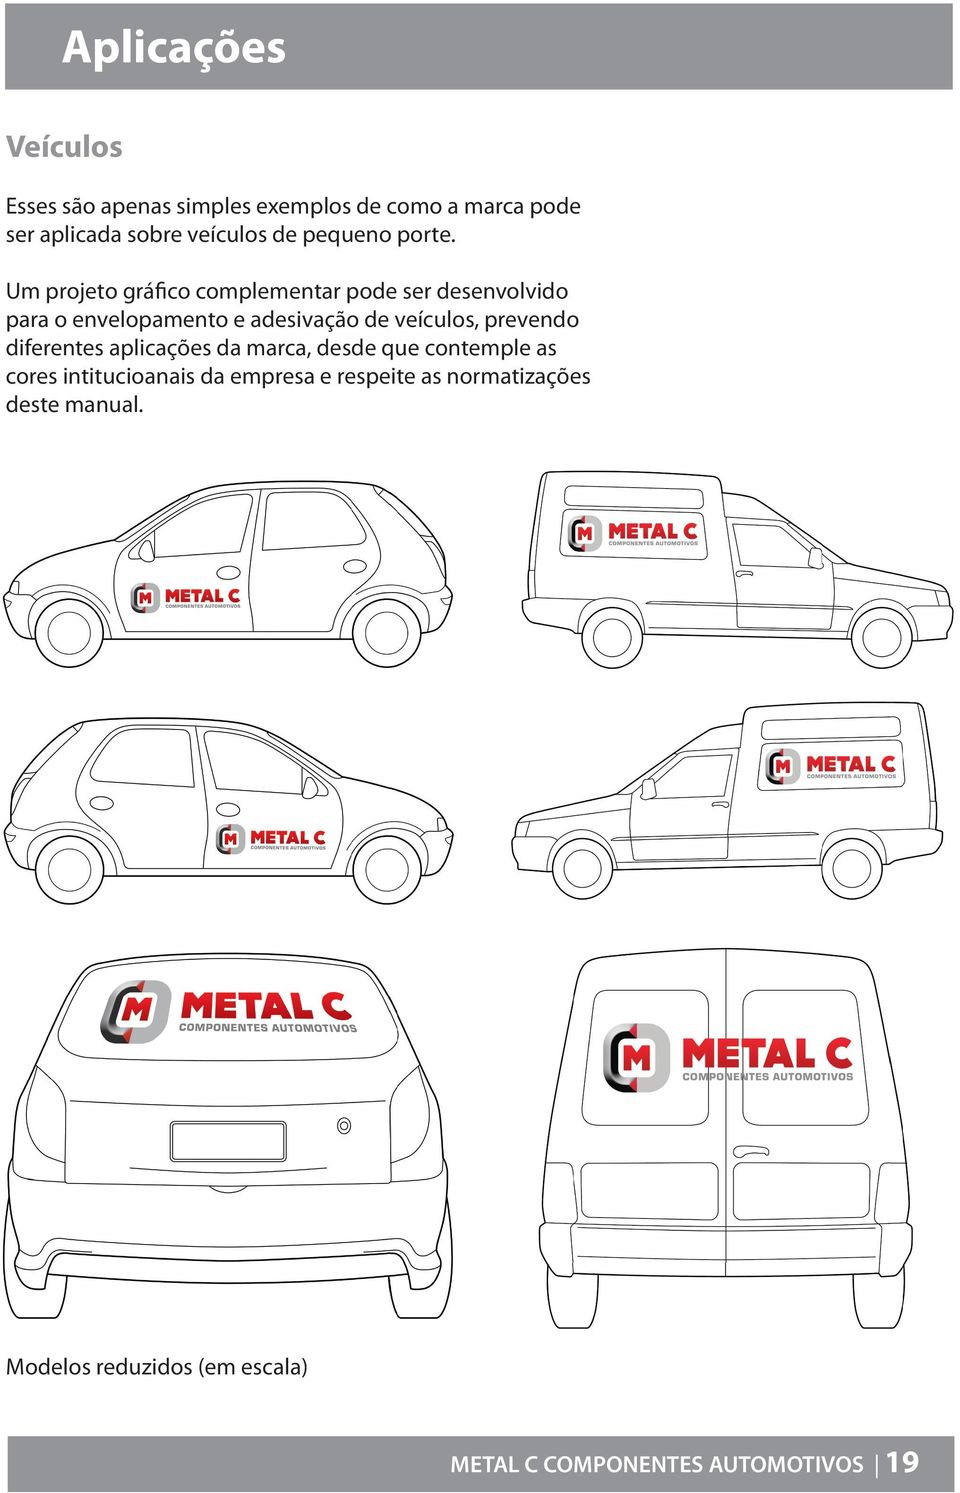 Um projeto gráfico complementar pode ser desenvolvido para o envelopamento e adesivação de veículos,